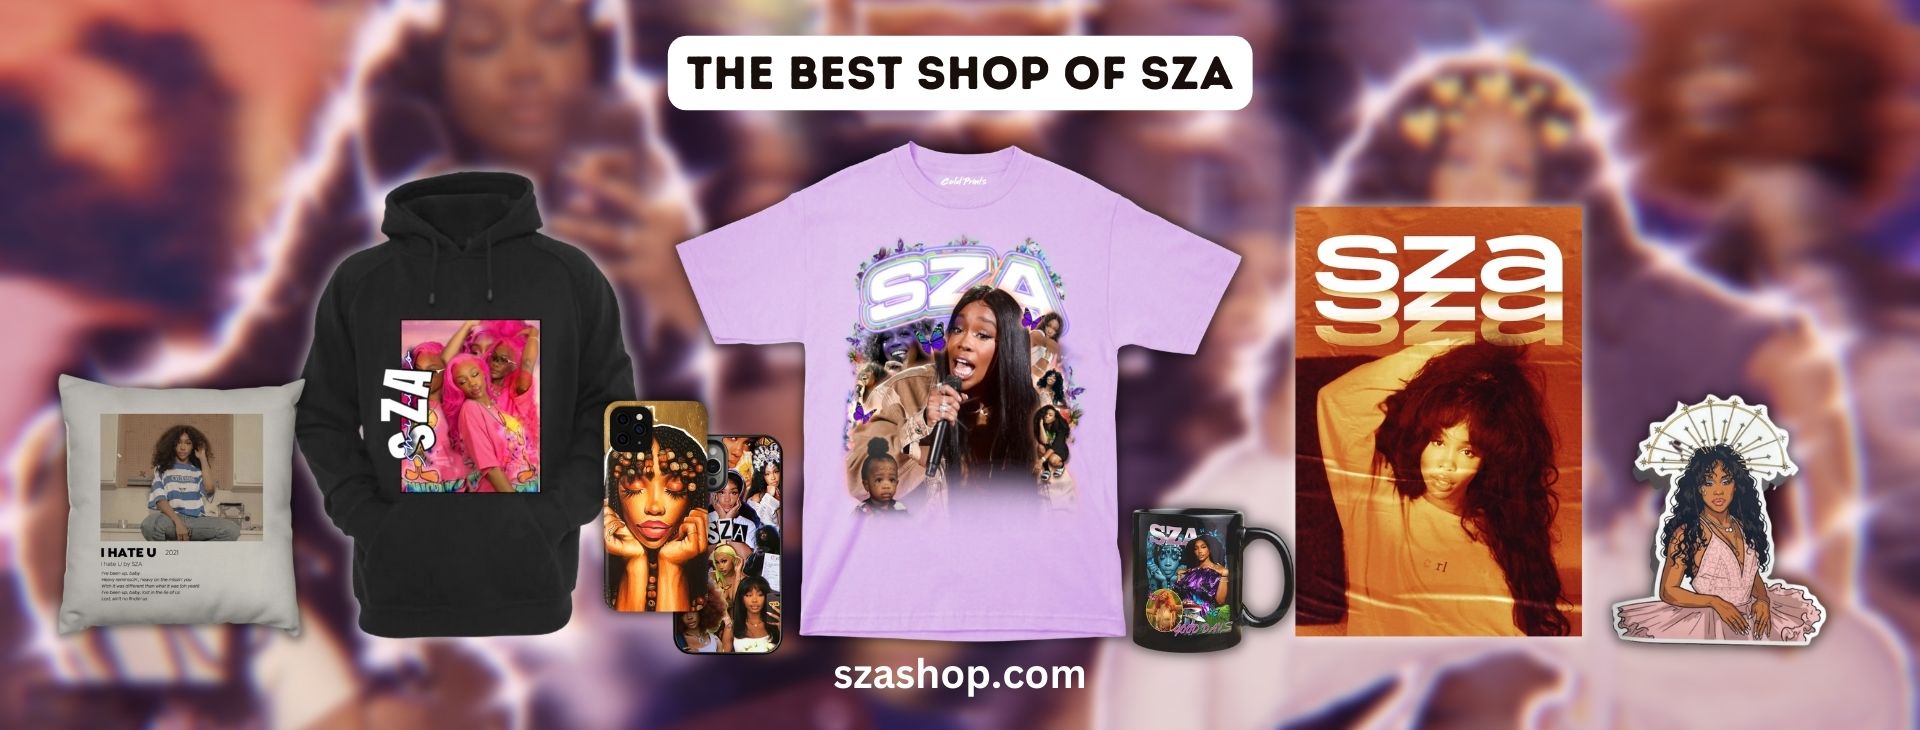 SZA Banner - SZA Shop